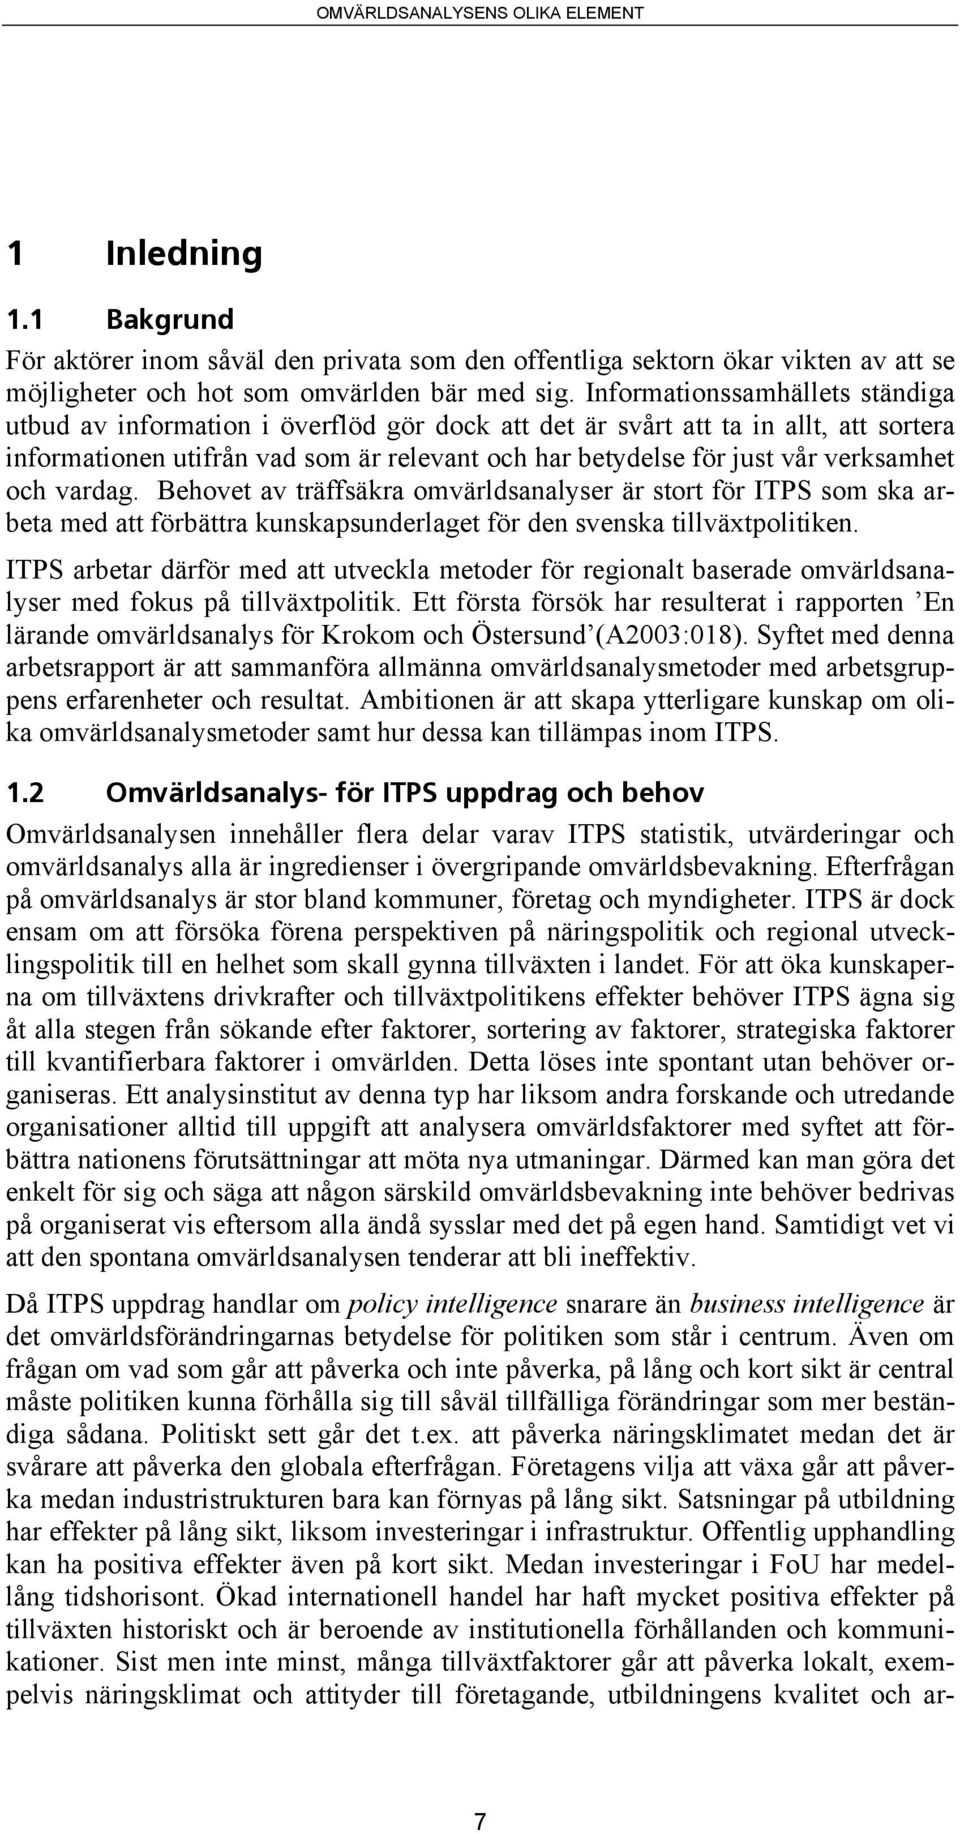 verksamhet och vardag. Behovet av träffsäkra omvärldsanalyser är stort för ITPS som ska arbeta med att förbättra kunskapsunderlaget för den svenska tillväxtpolitiken.